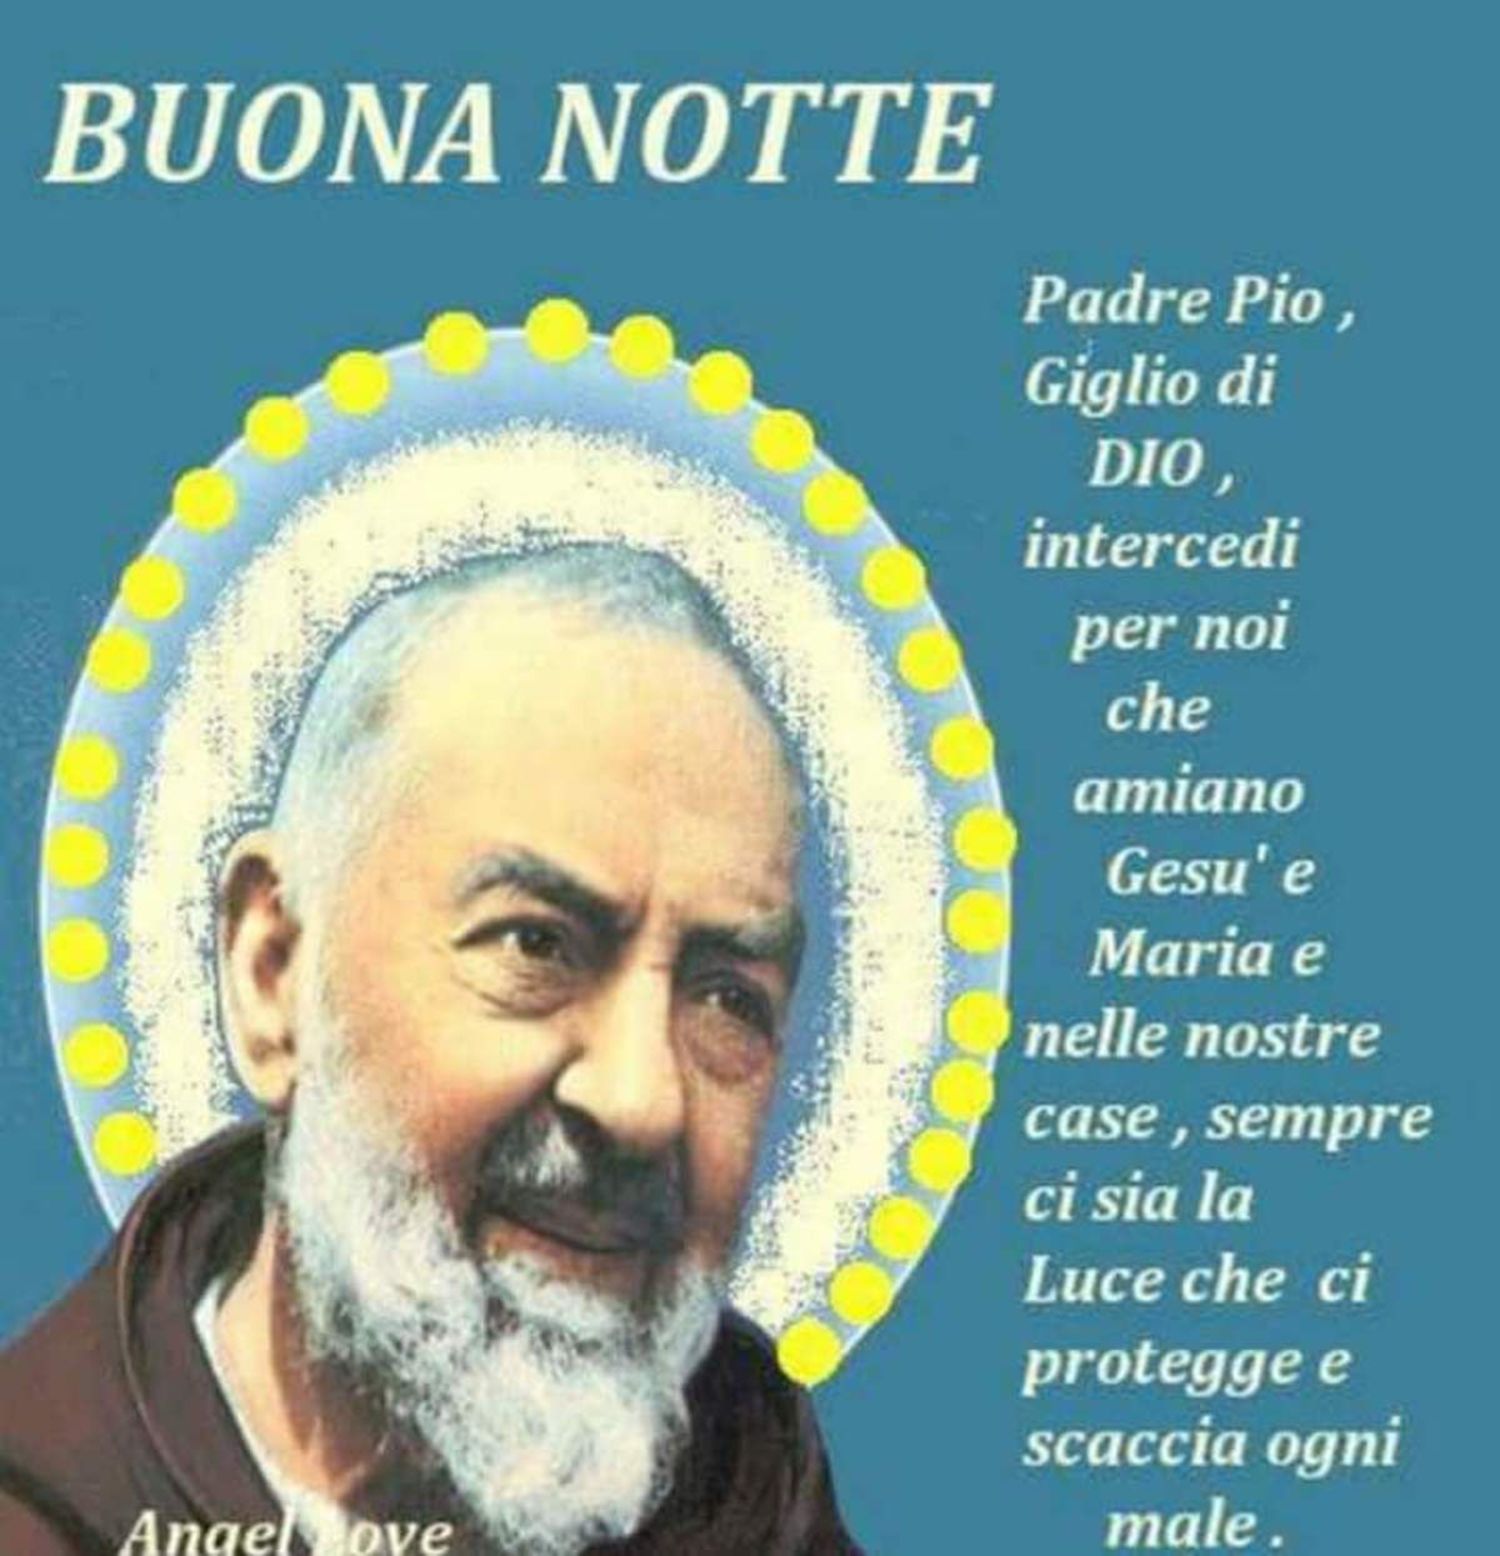 Buonanotte da Padre Pio 2